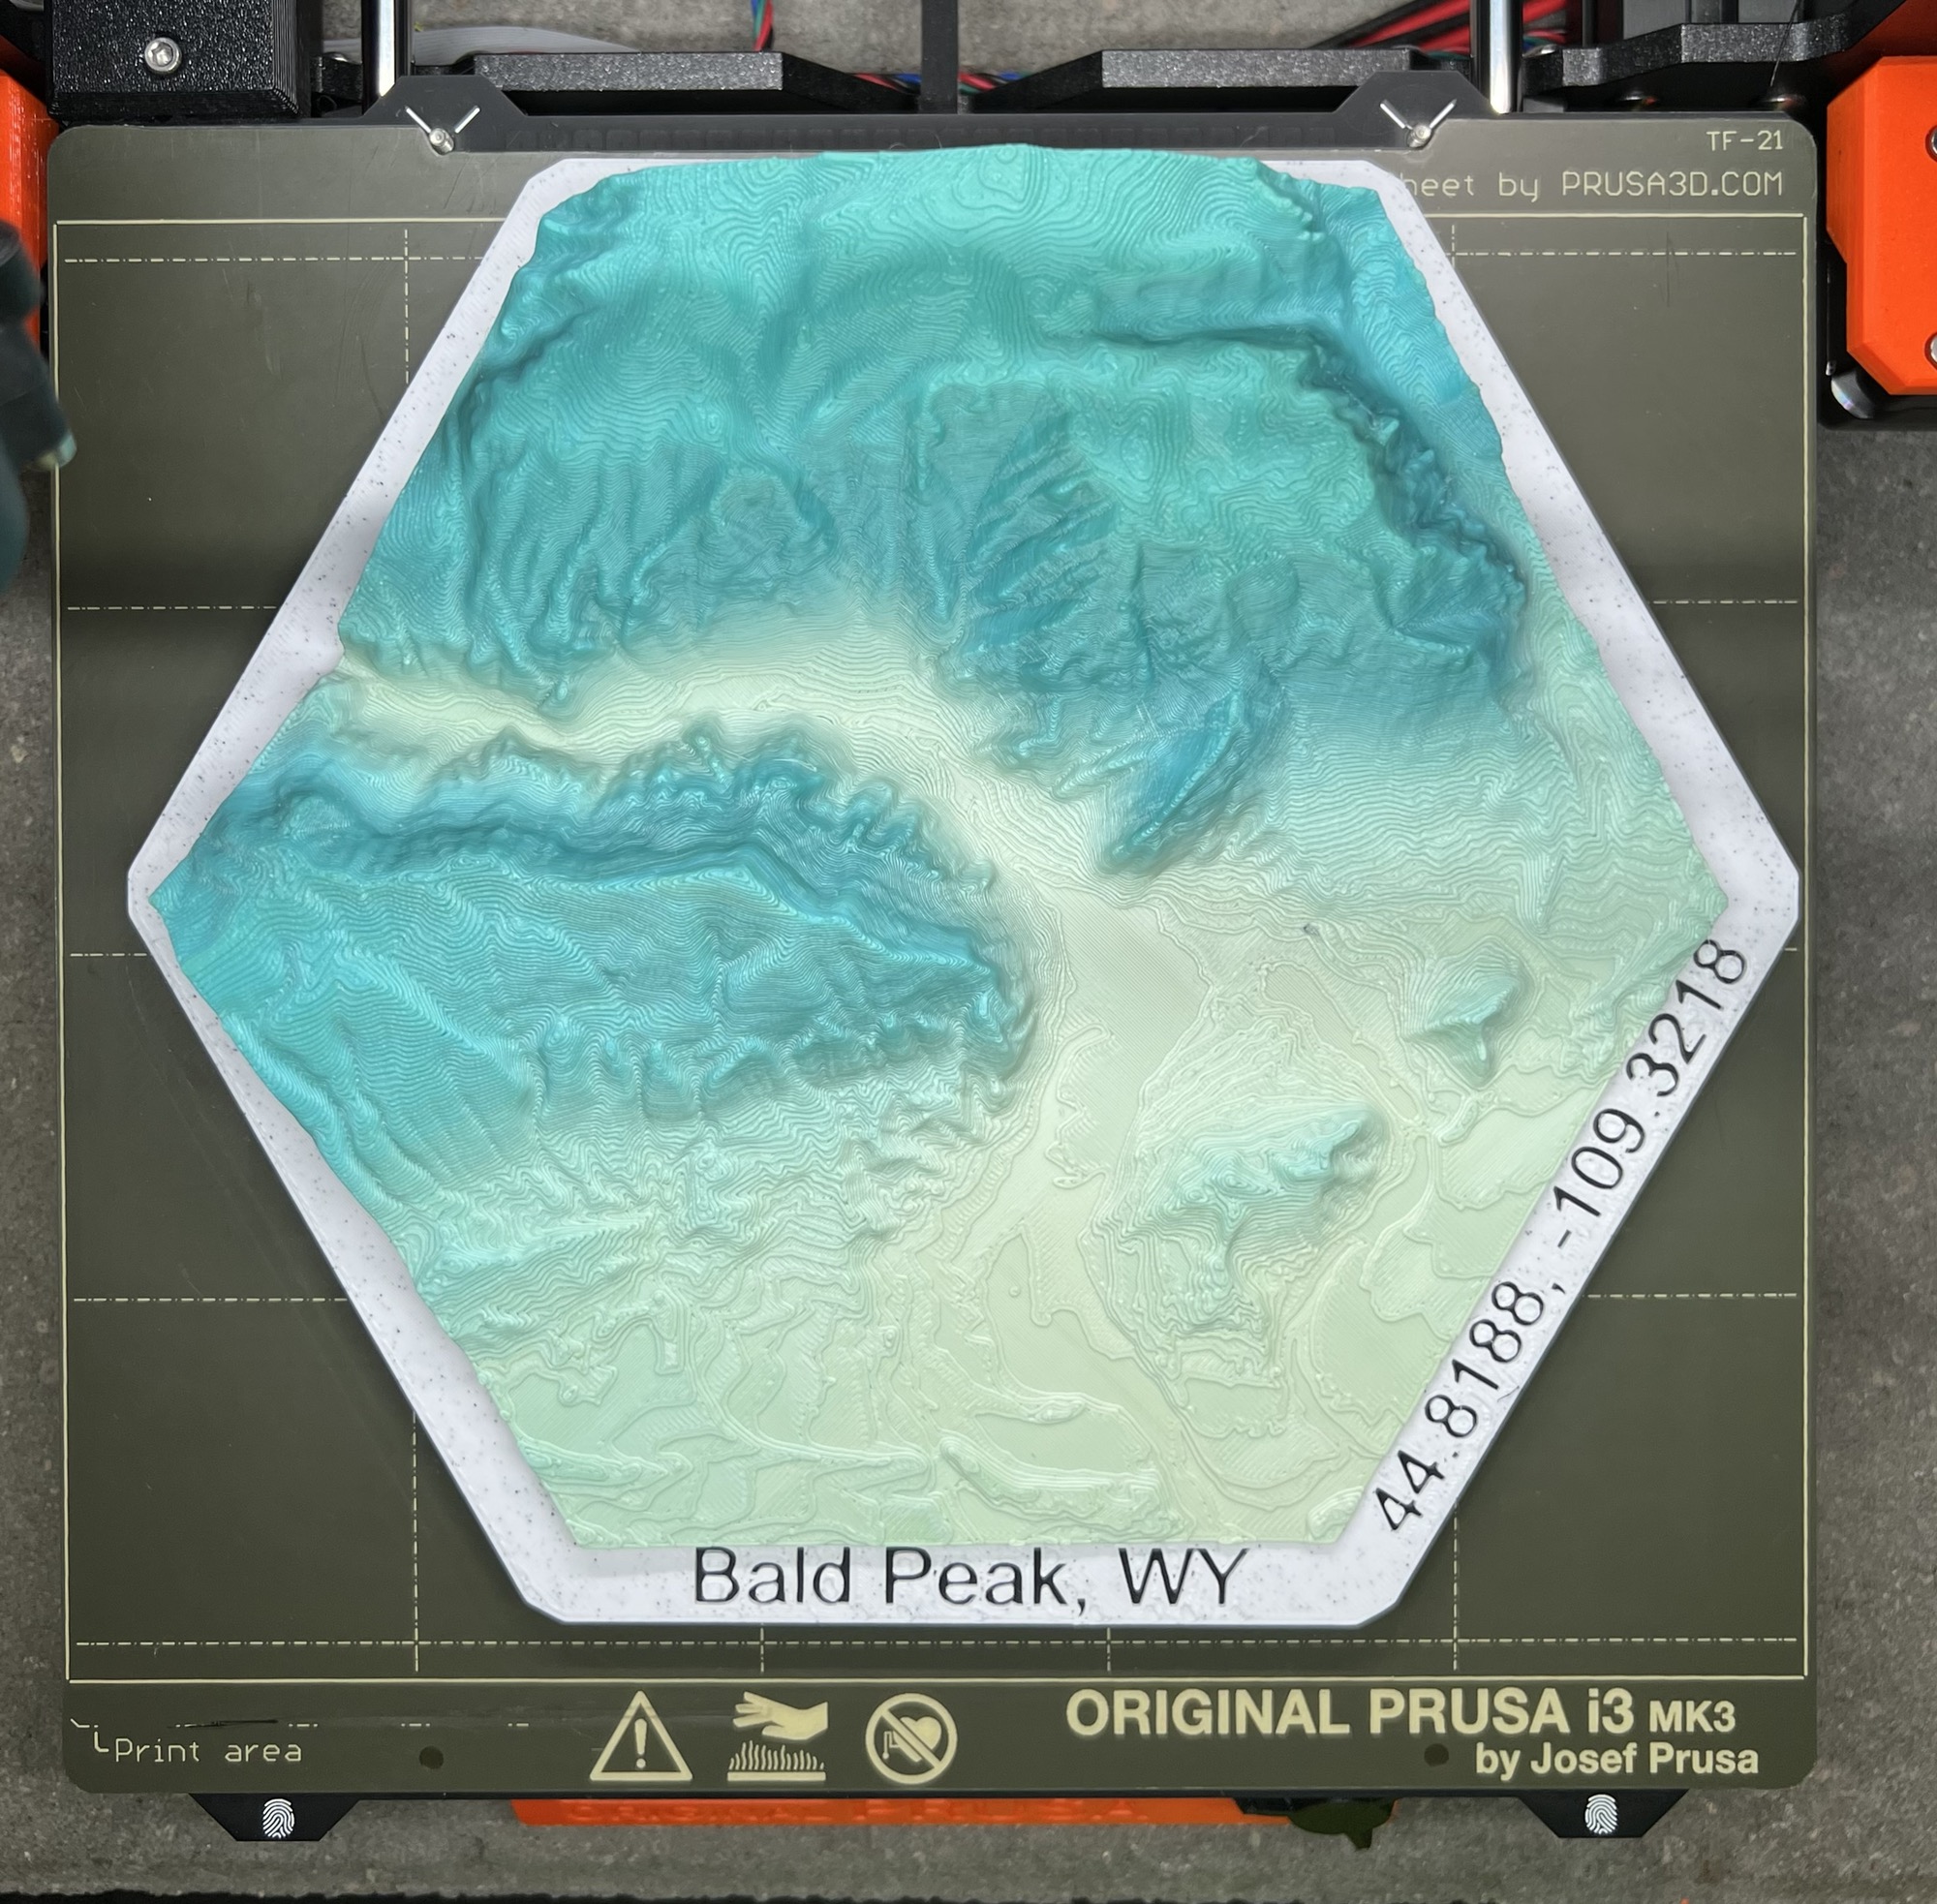 Bald Peak, WY Terrain Model